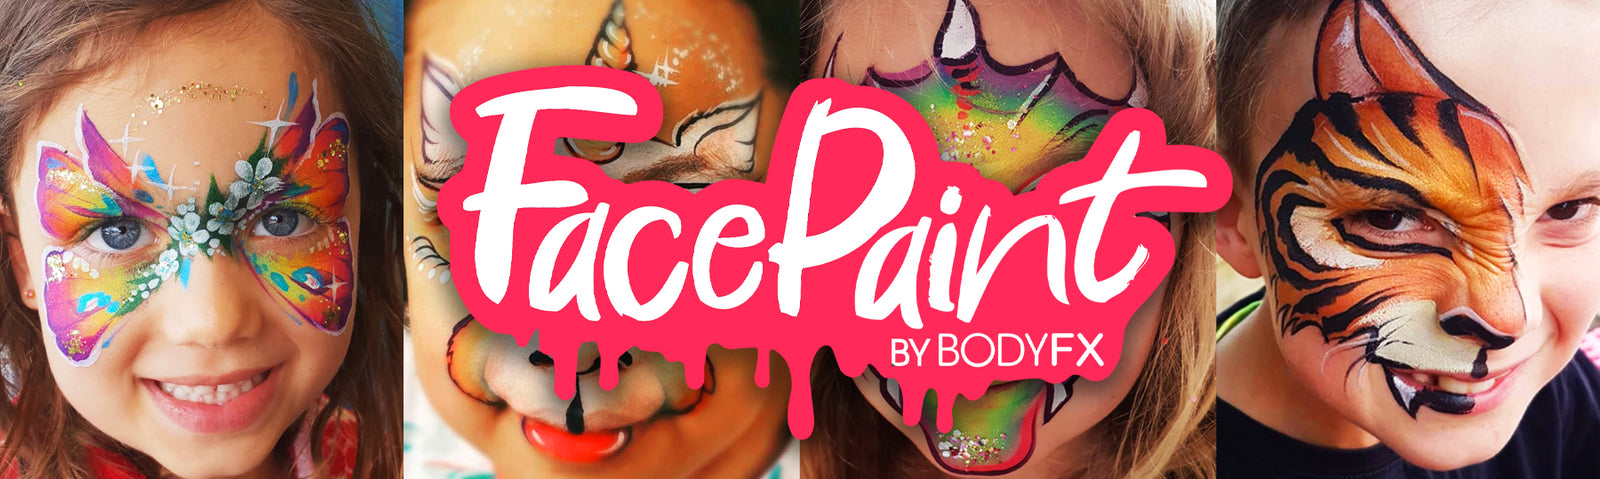 Diamond FX Face Painting Palette 6 Colour UV Neon Face Paint | Dublin Body  Paint